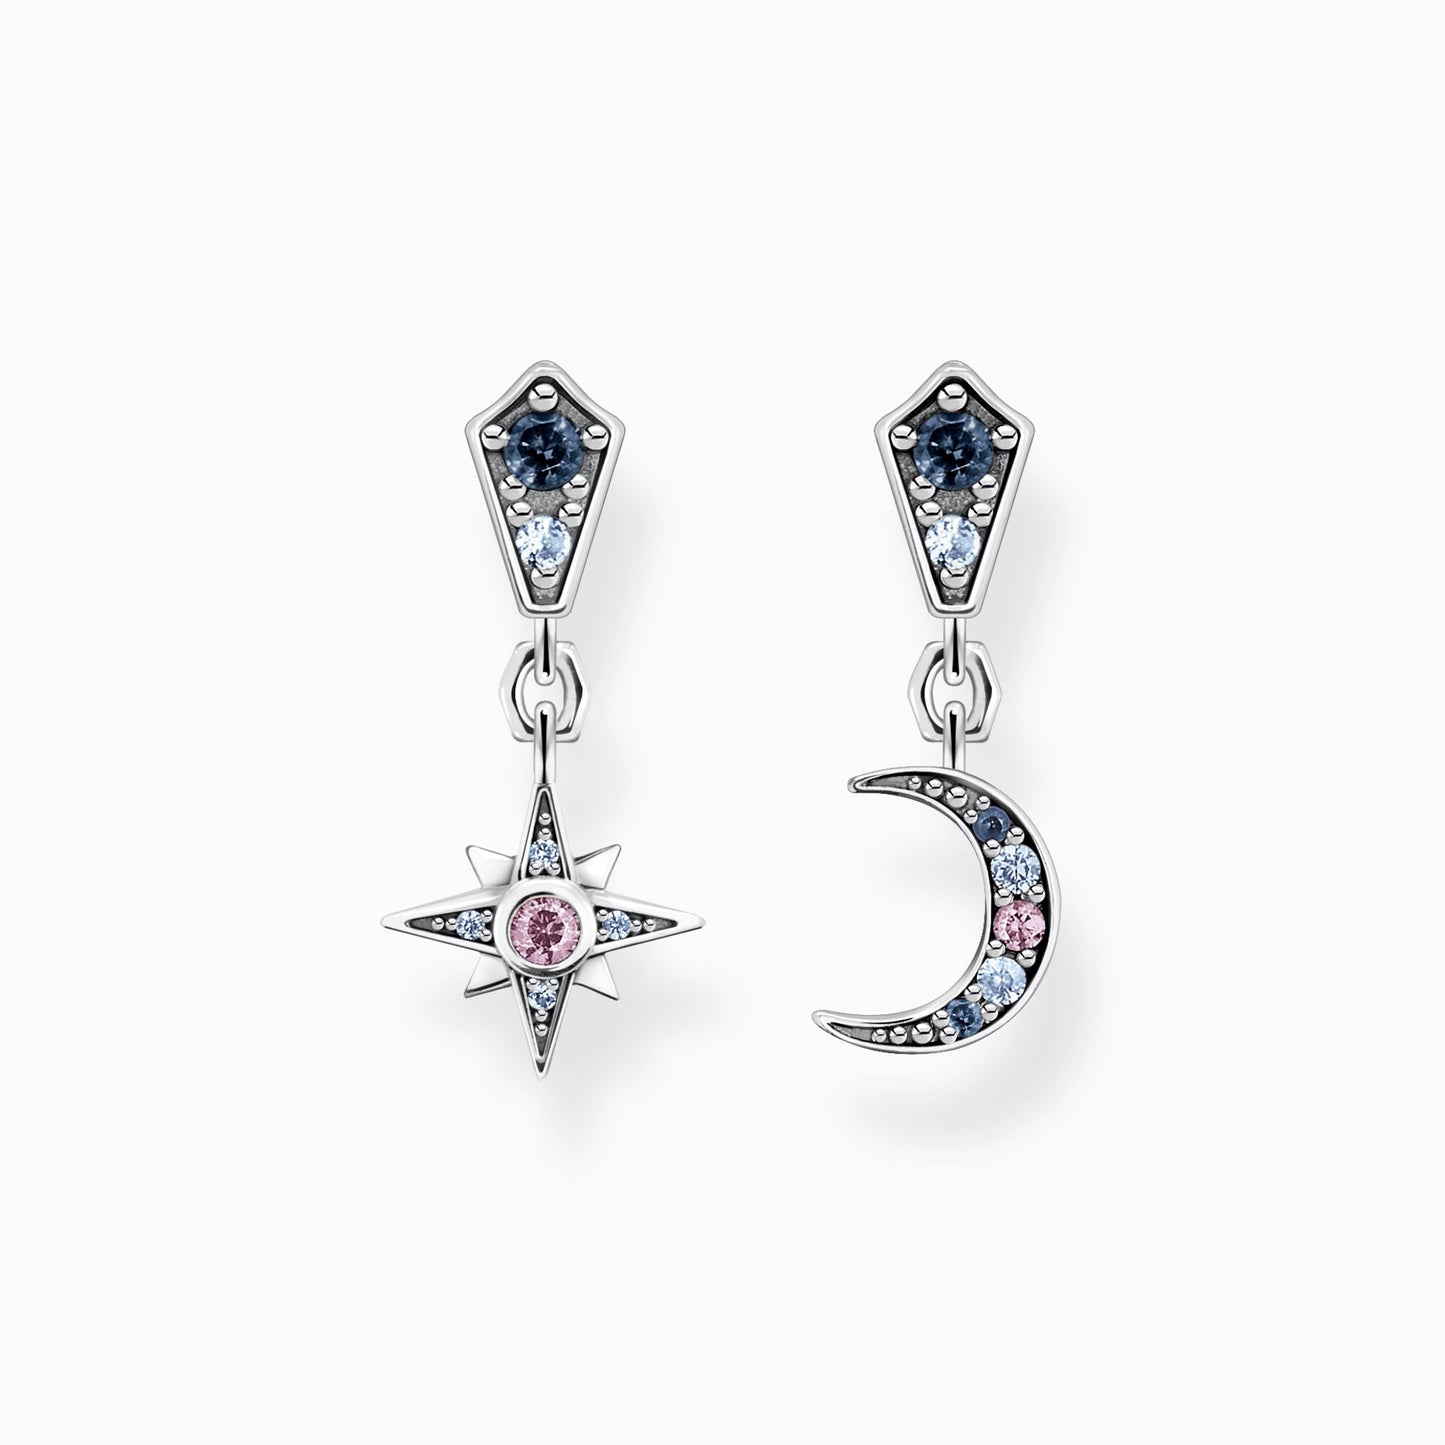 Earrings Royalty star & Moon silver